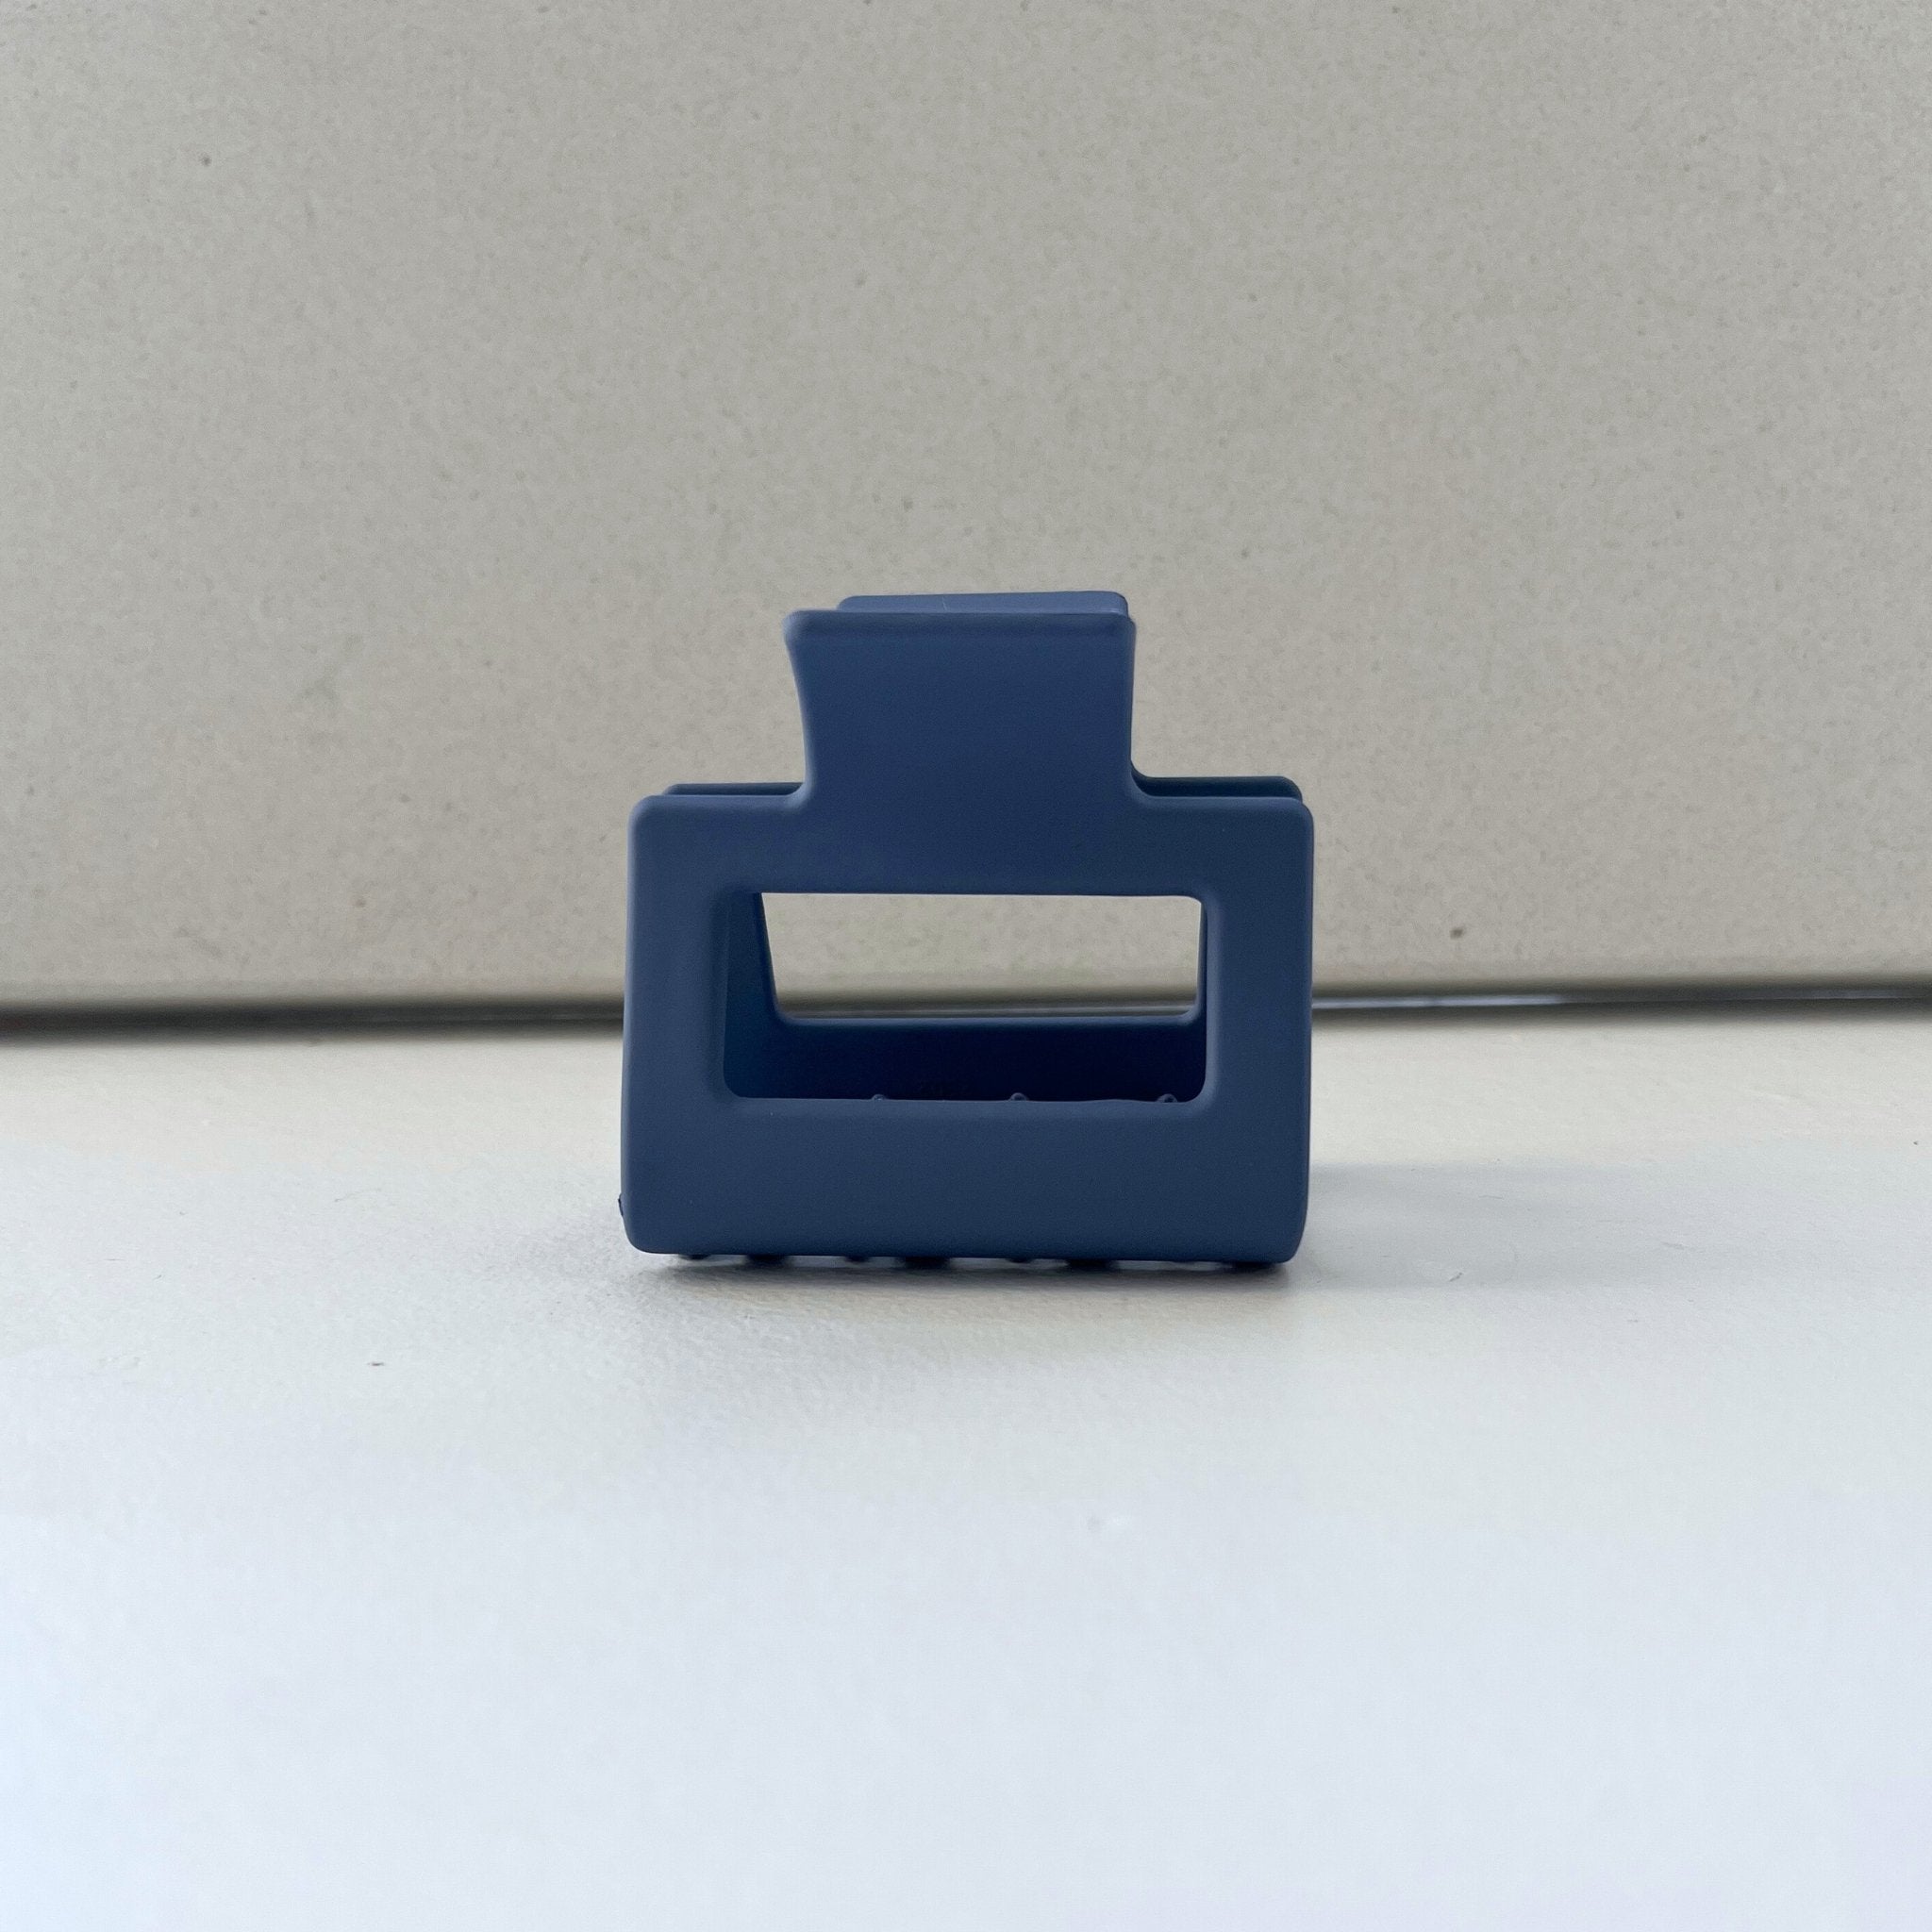 Concept C. Pince Carrée Mate Bleu - 6 cm - Concept C. Shop